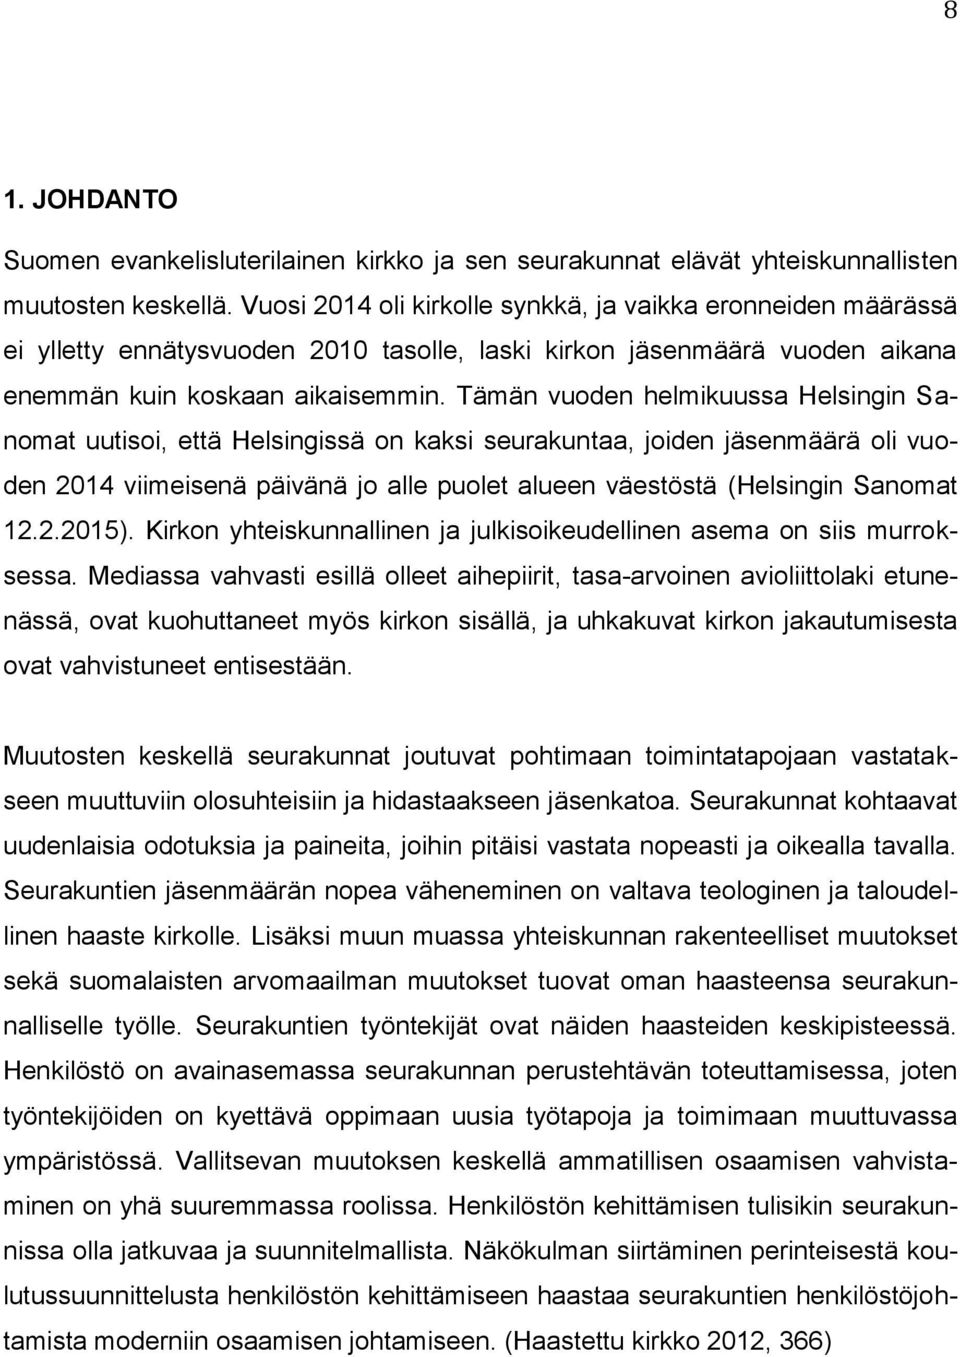 Tämän vuoden helmikuussa Helsingin Sanomat uutisoi, että Helsingissä on kaksi seurakuntaa, joiden jäsenmäärä oli vuoden 2014 viimeisenä päivänä jo alle puolet alueen väestöstä (Helsingin Sanomat 12.2.2015).